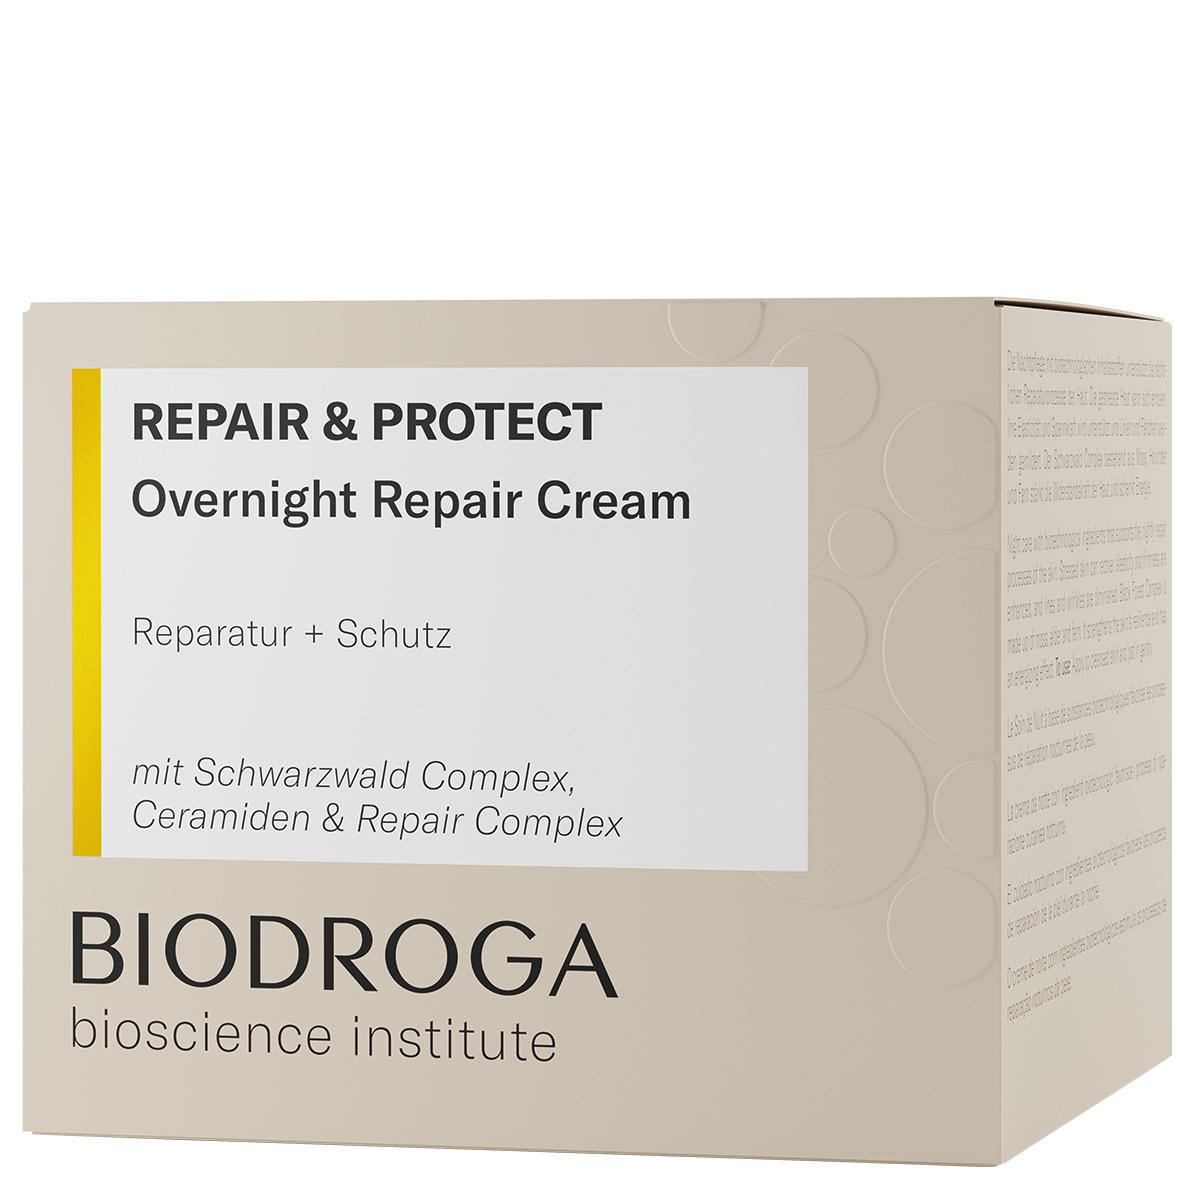 BIODROGA Bioscience Institute REPAIR & PROTECT Overnight Repair Cream 50 ml - 2